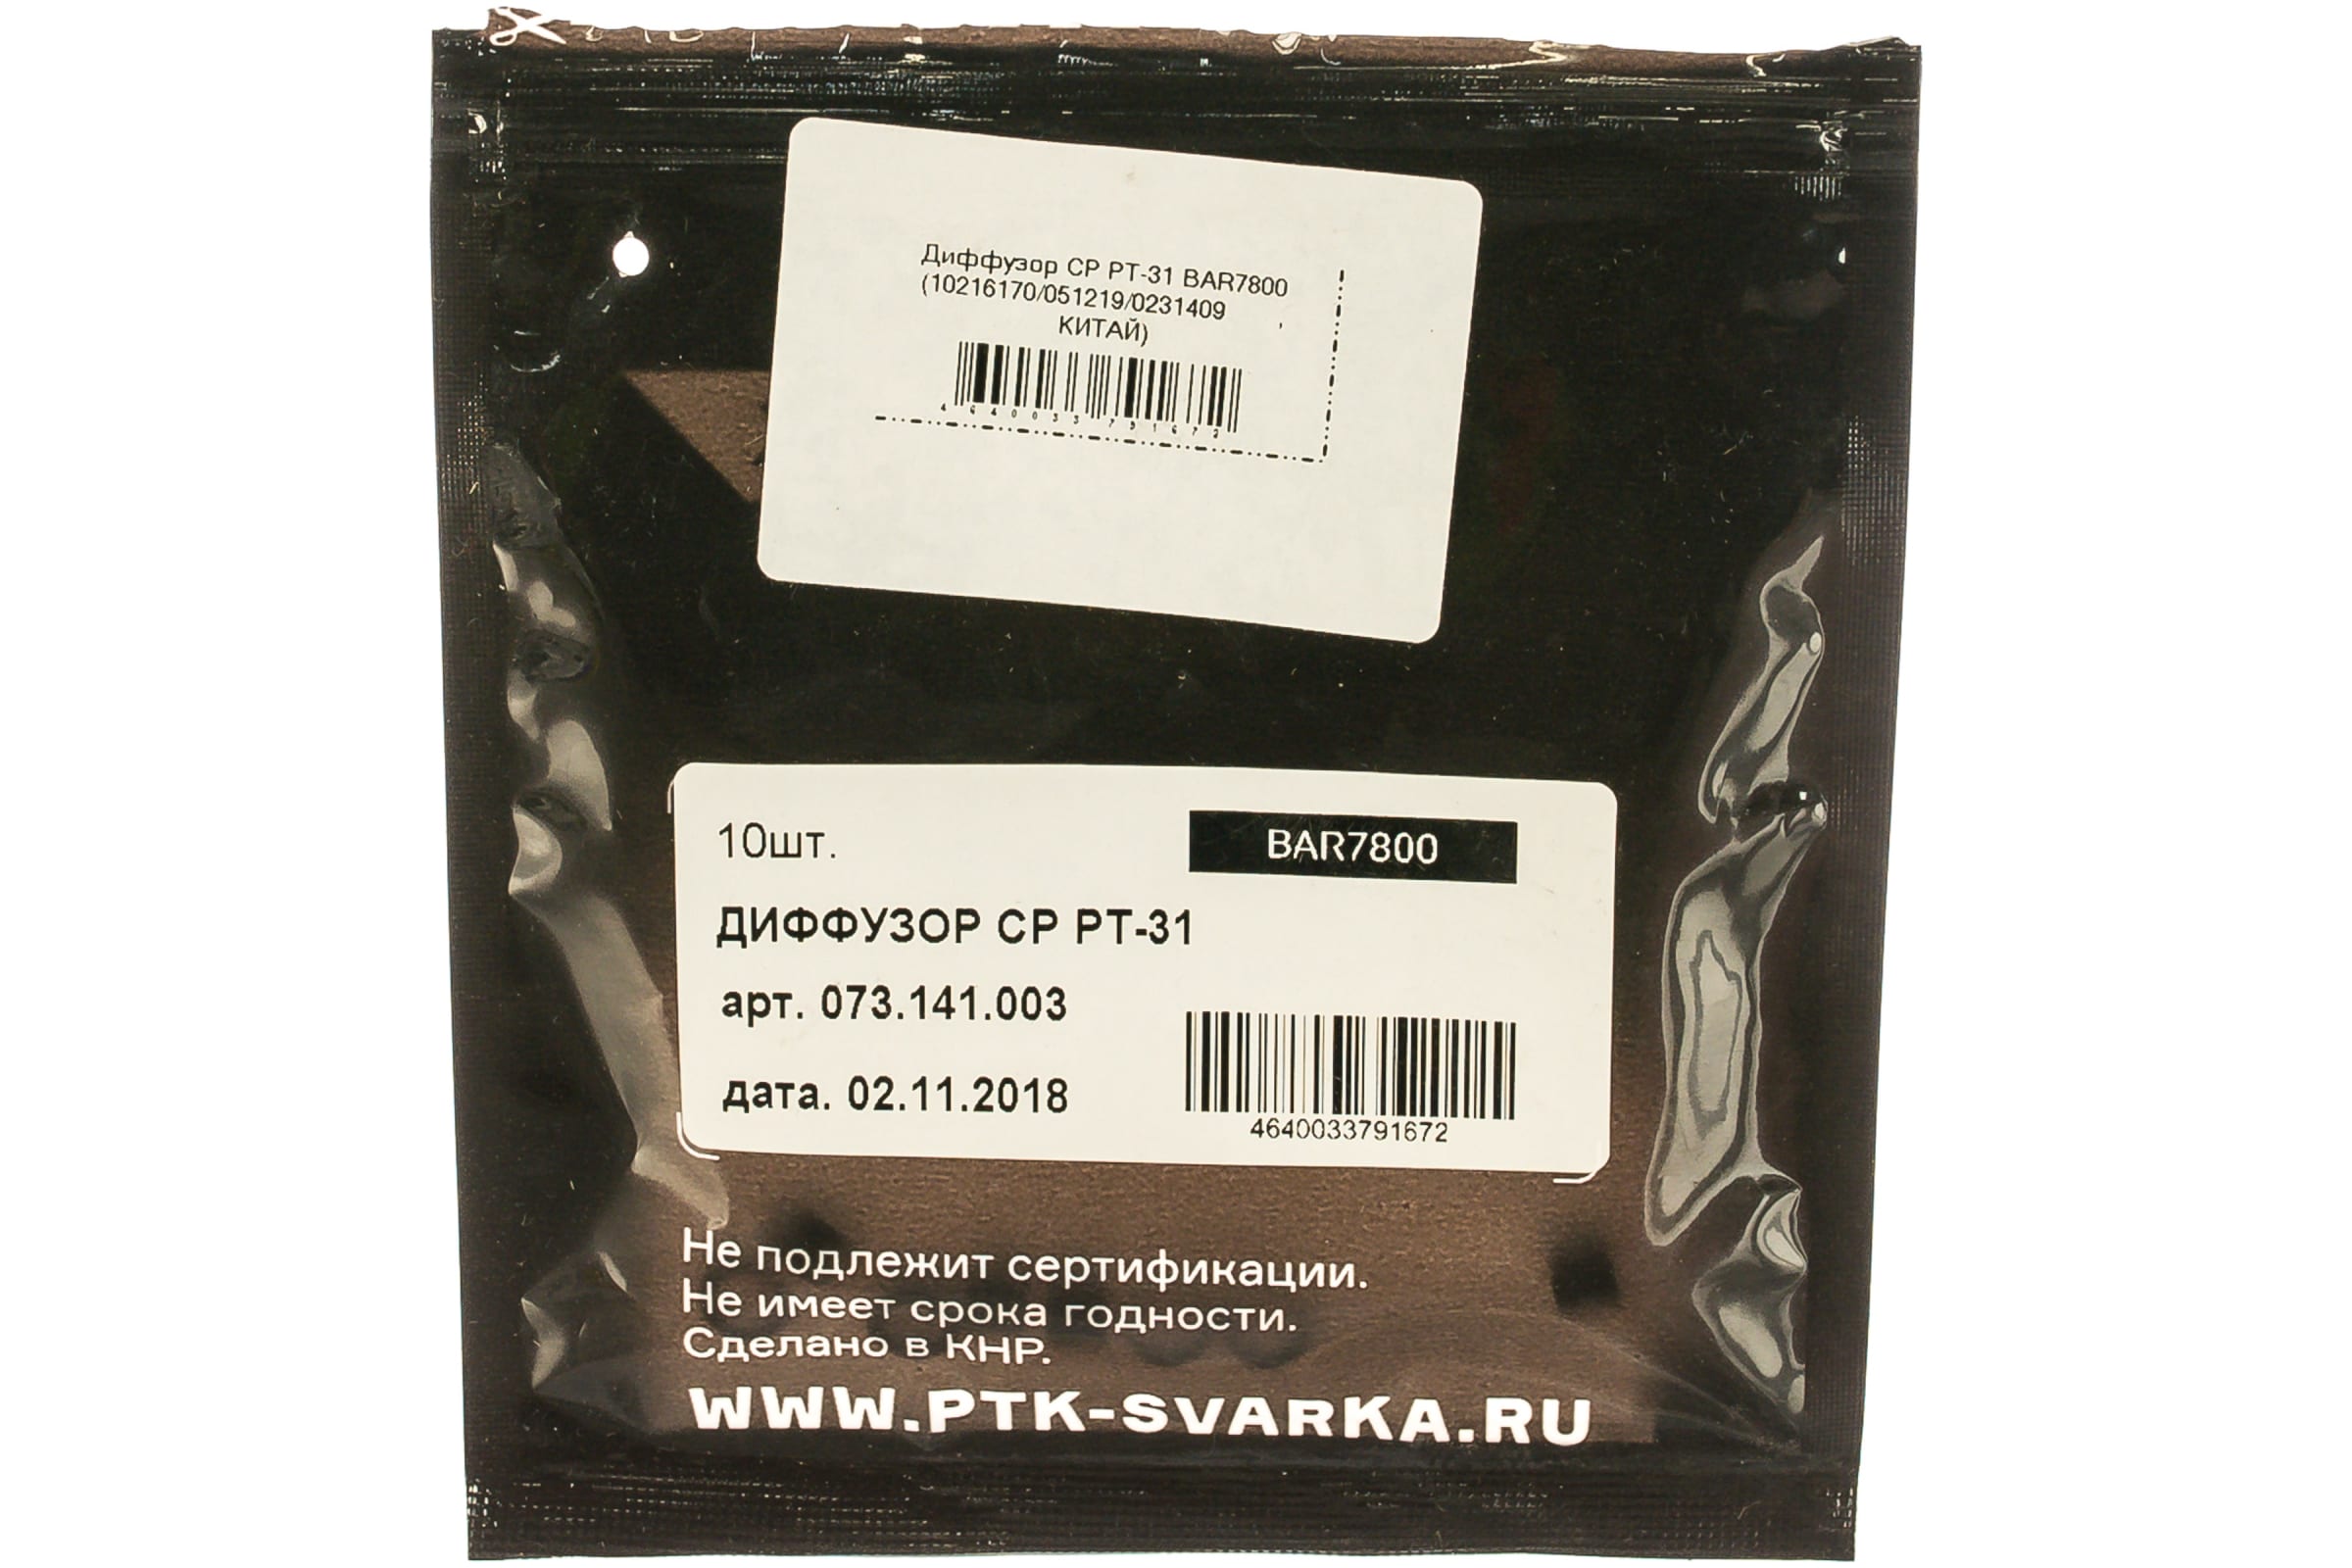 ПТК Аромадиффузор CP PT-31 BAR7800 00000027256 10 шт. в упаковке